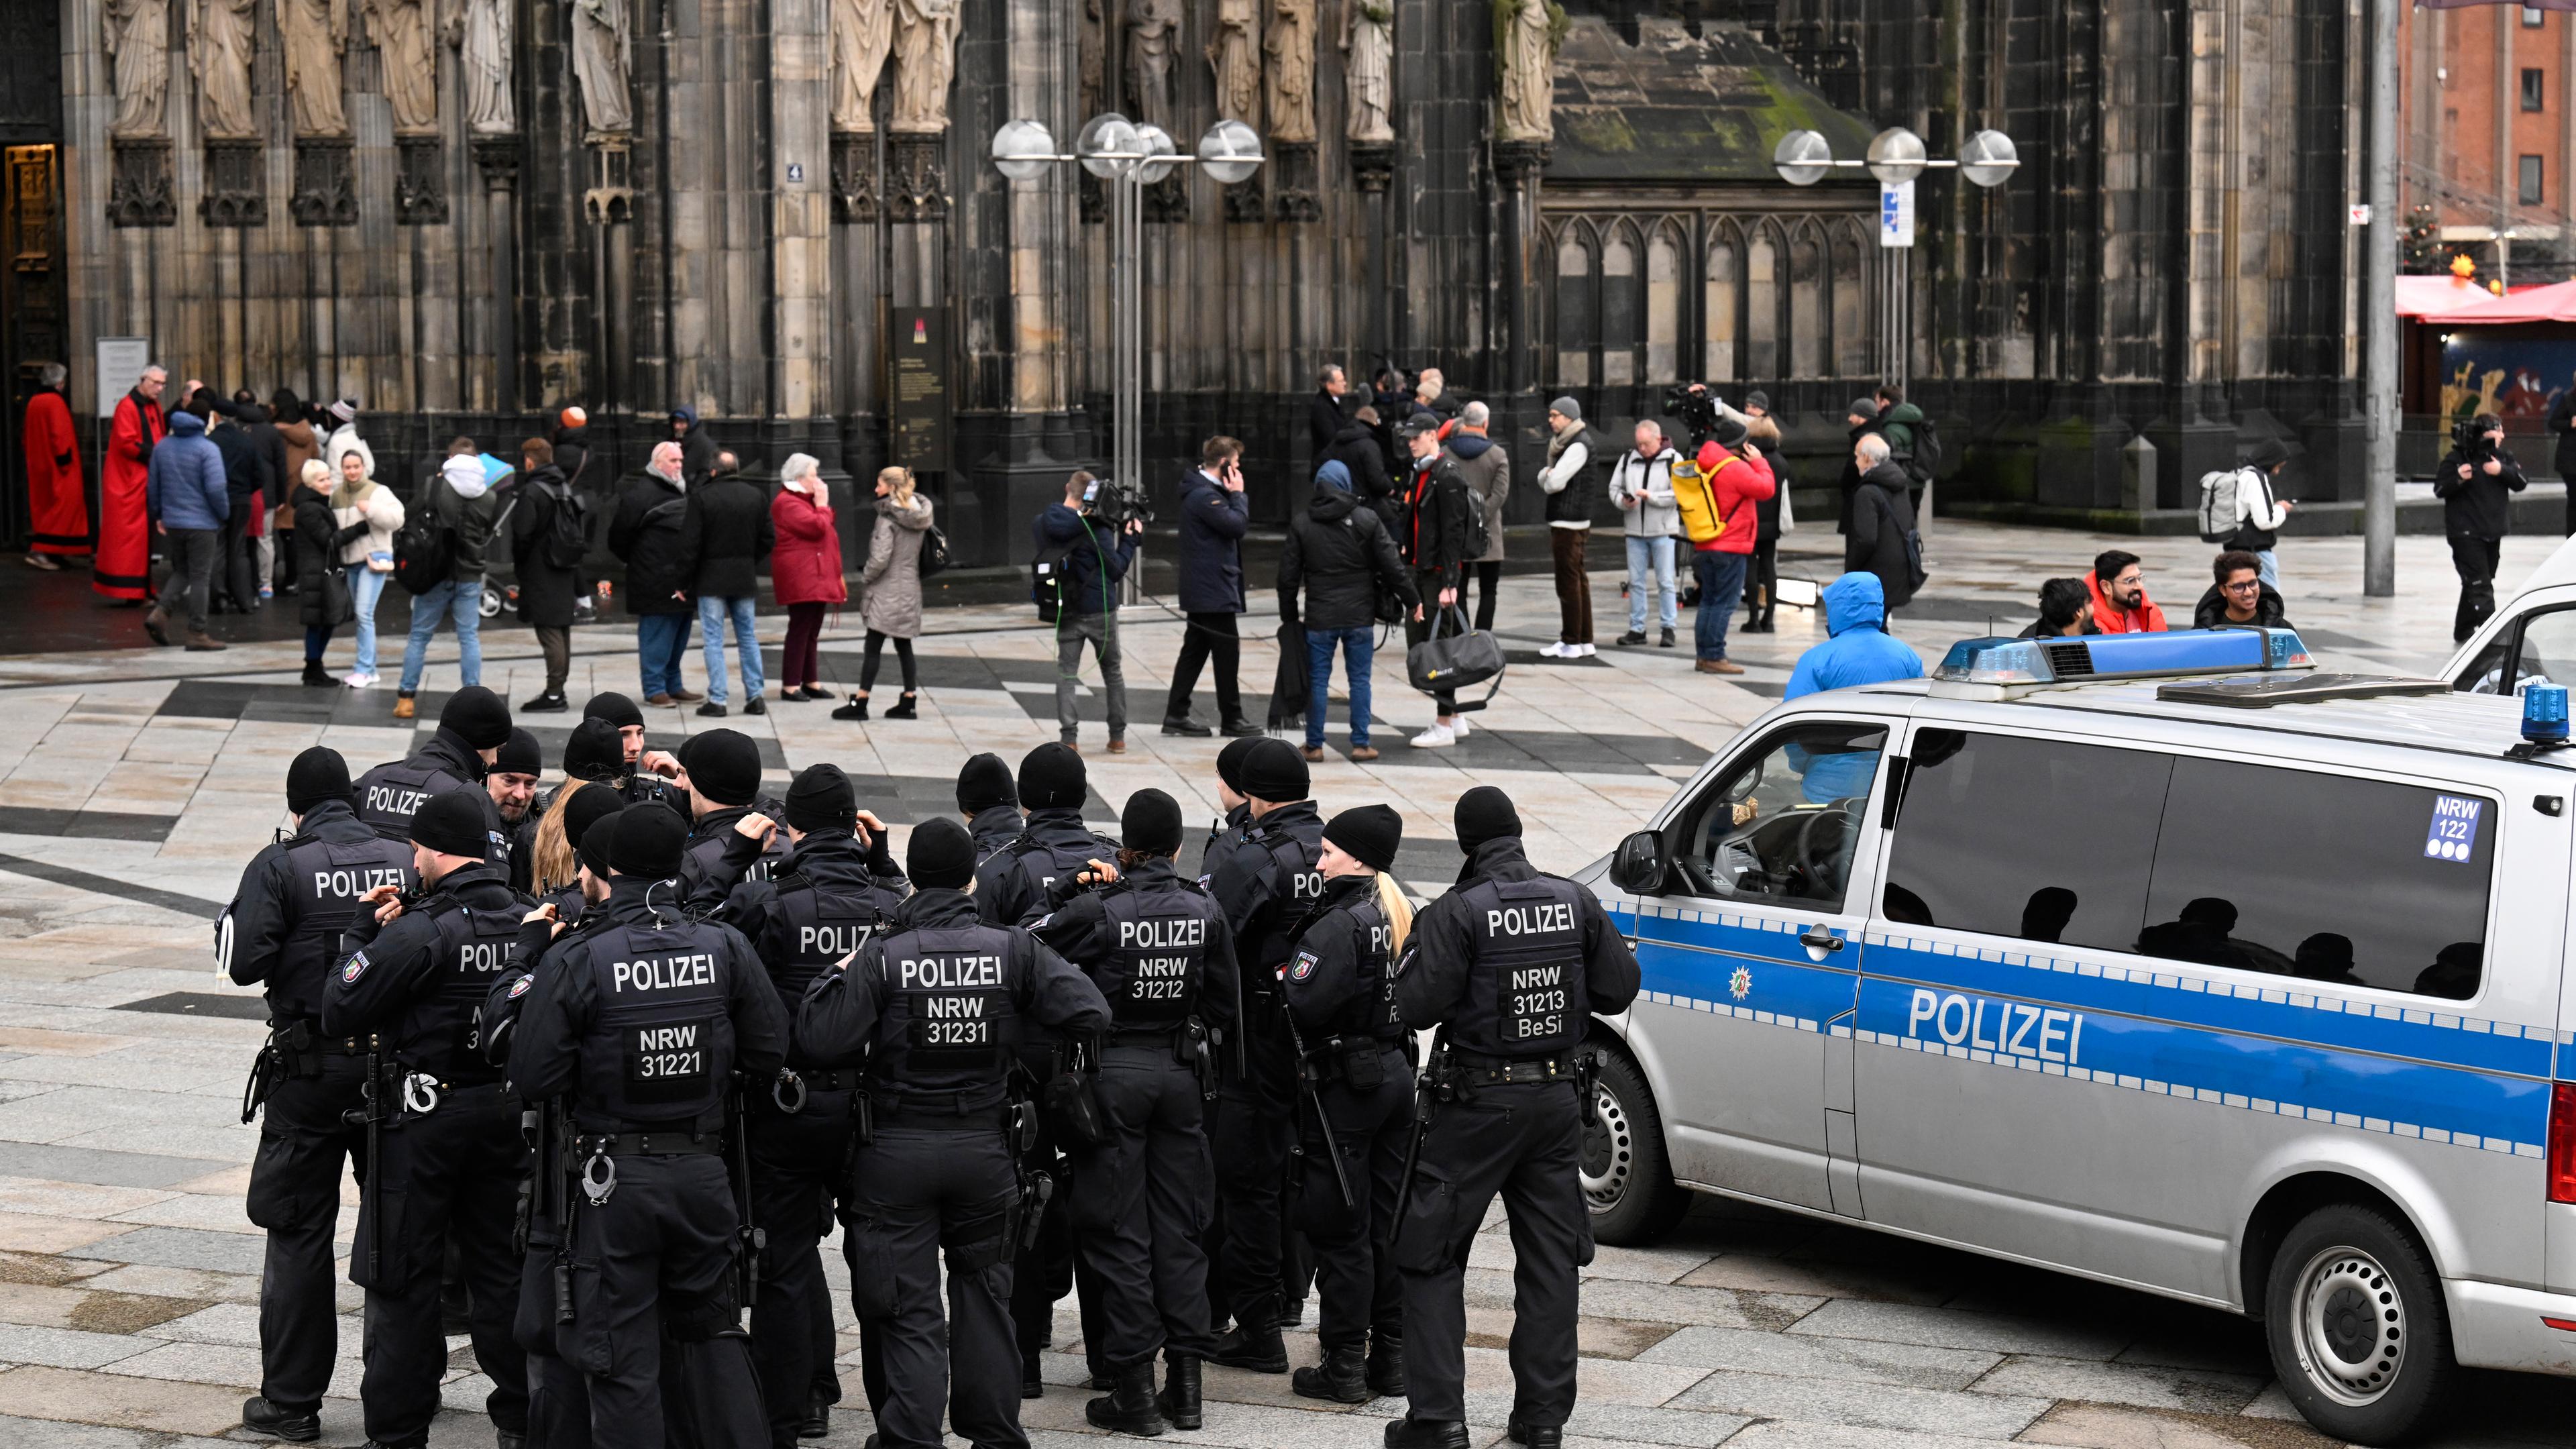 Polizisten patrouillieren am Eingang des Kölner Doms am Weihnachtstag.